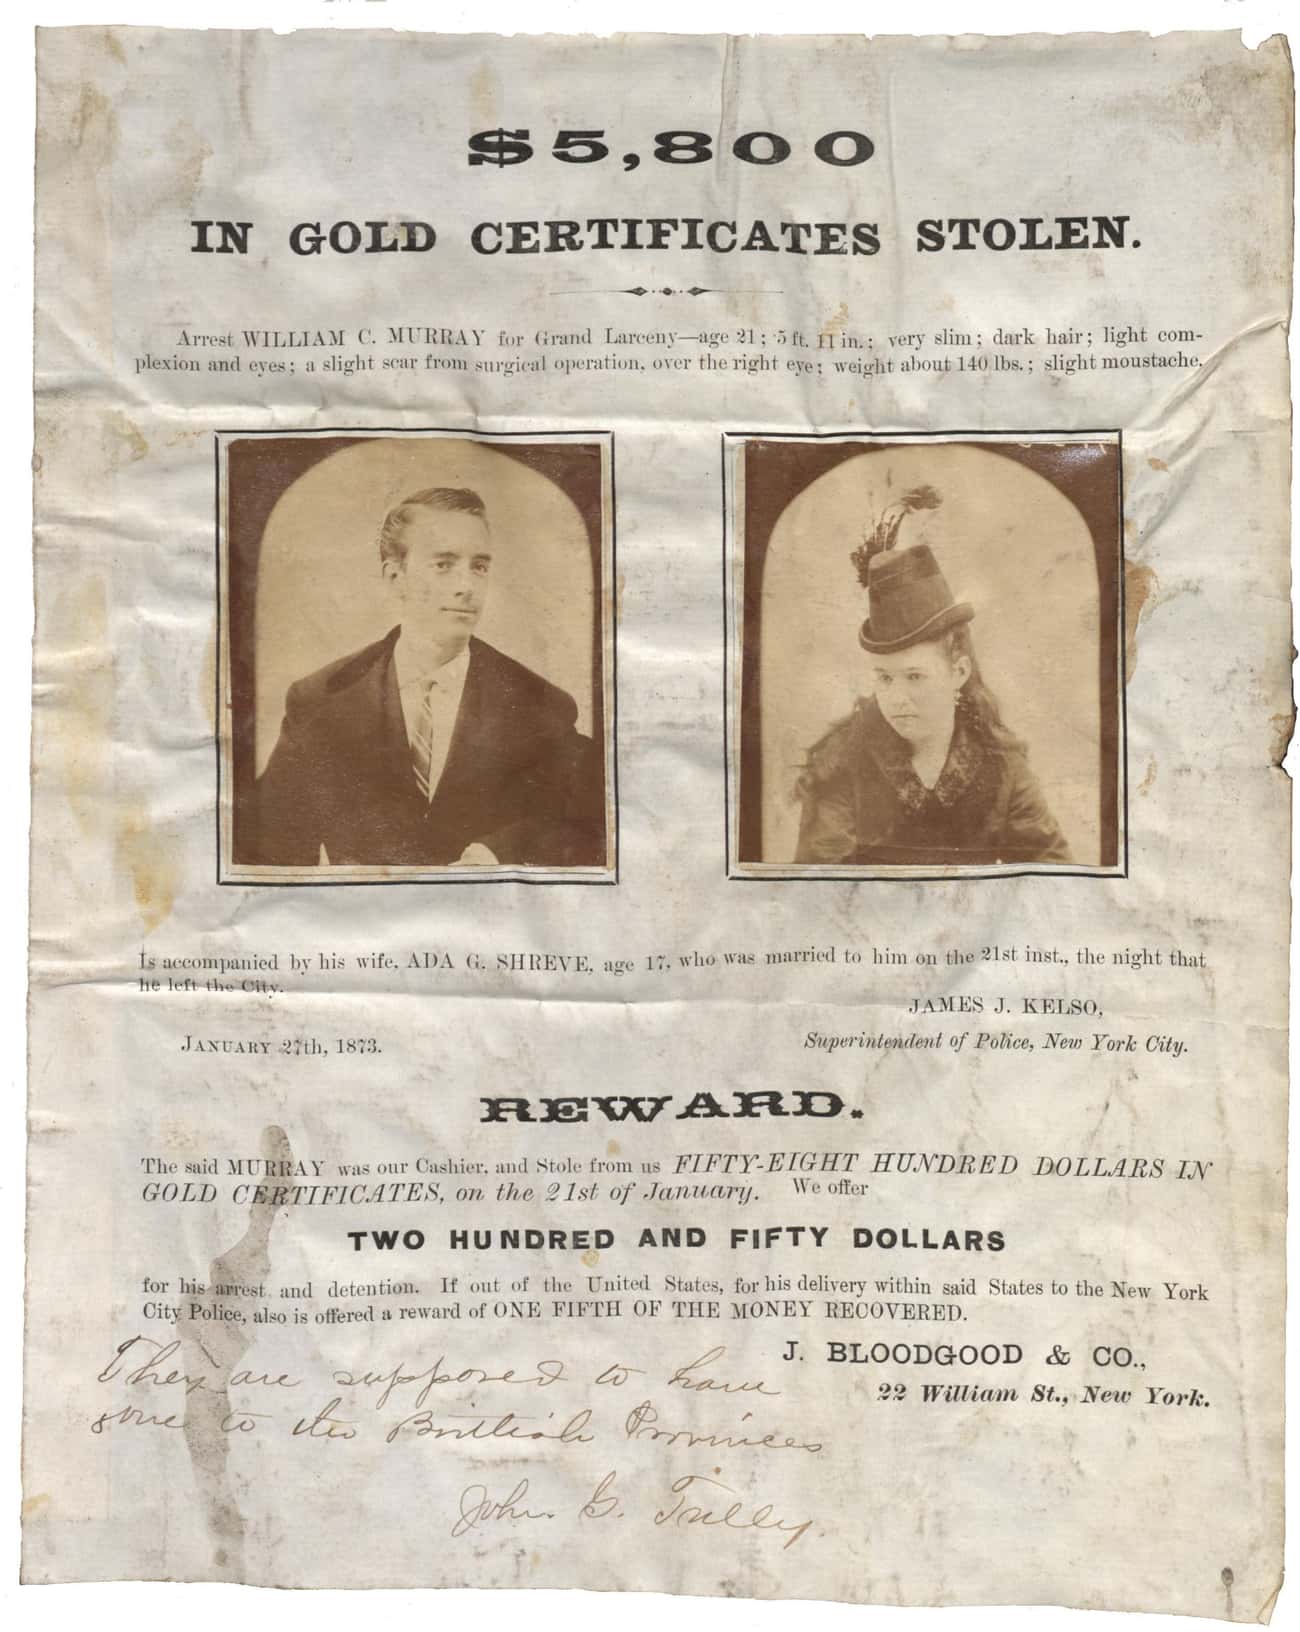 $5,800 in Gold Certificates Stolen (1873)